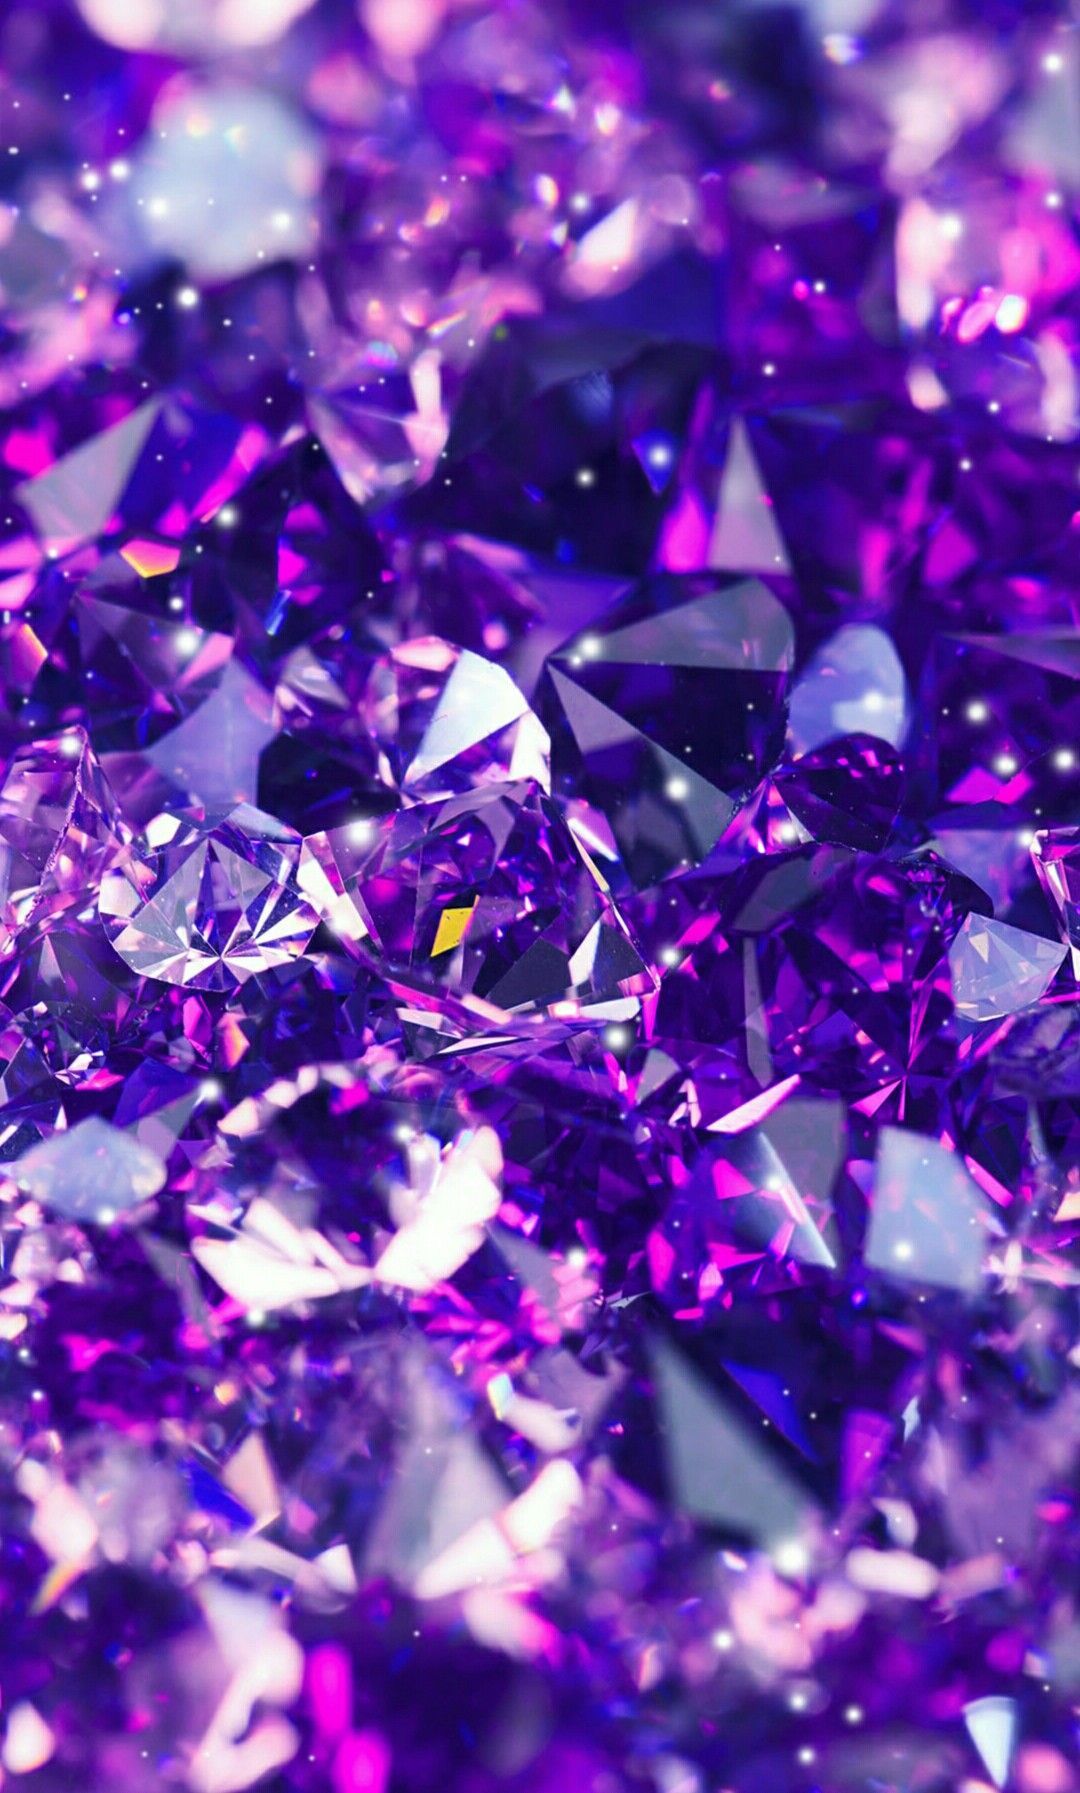 Preciosas joyas moradas | Preciosas gemas moradas - # púrpura #violeta